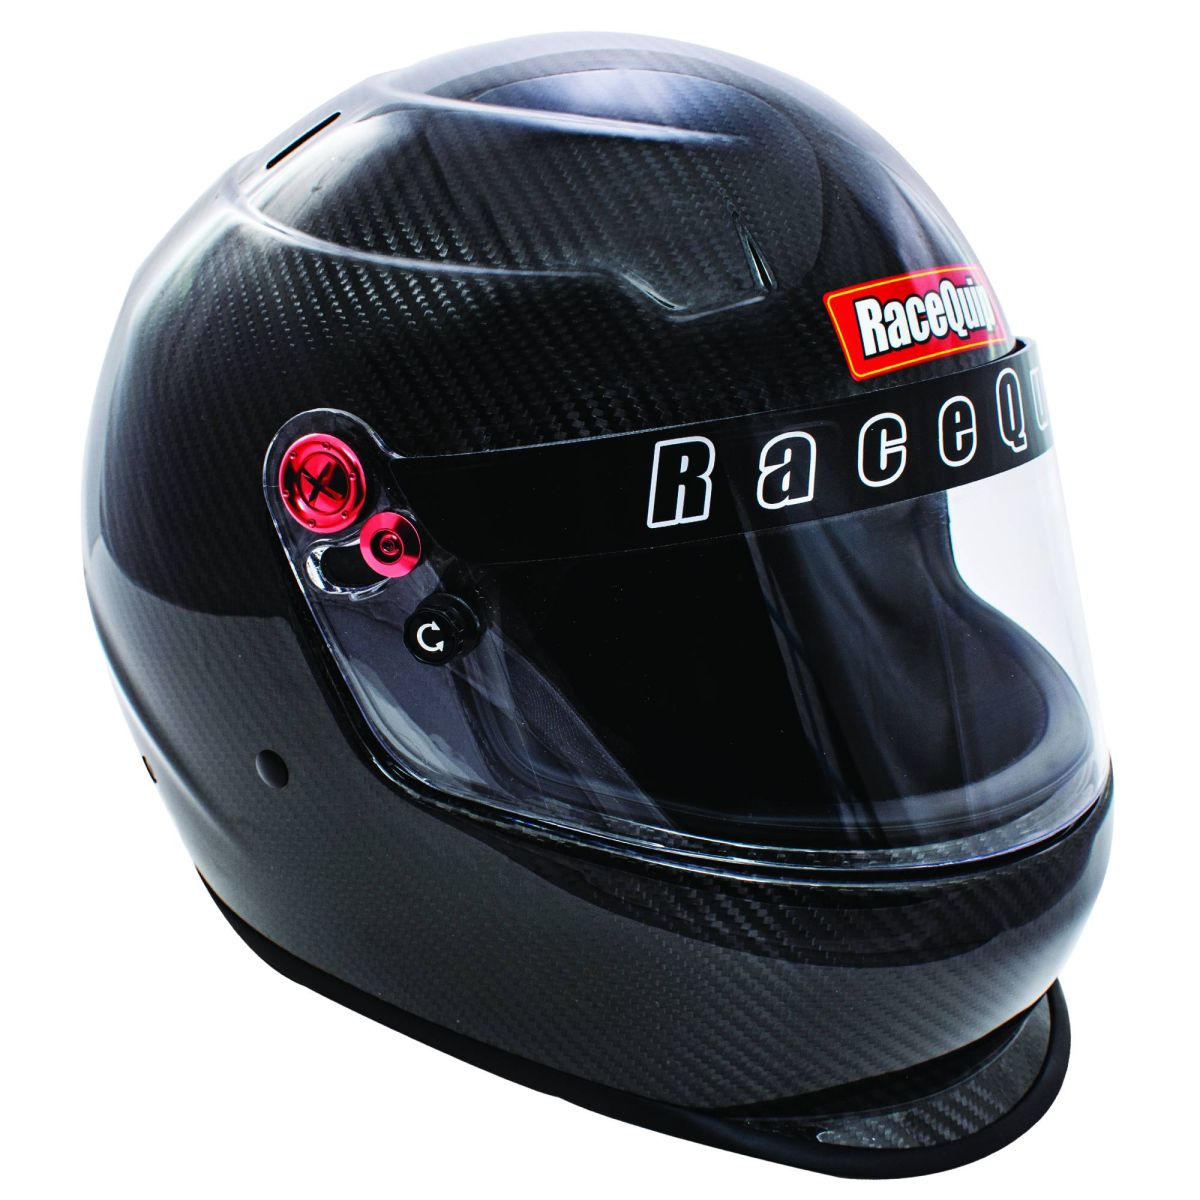 RaceQuip - RaceQuip PRO20 Full Face Racing Helmet Clear Coated Carbon Fiber